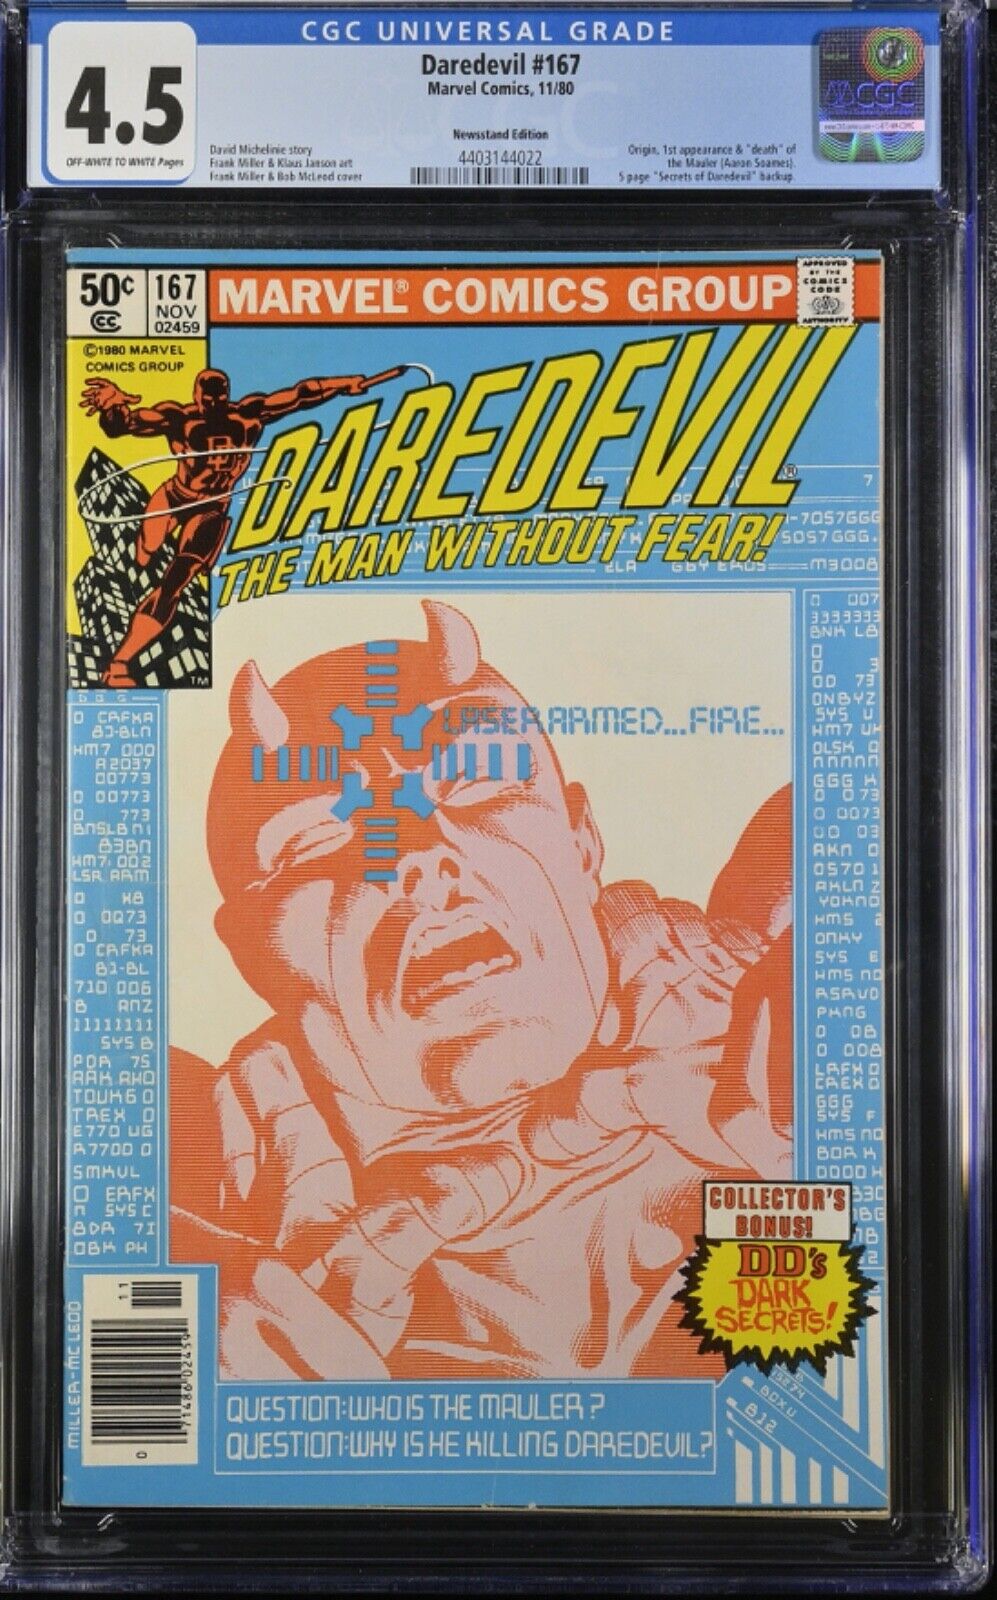 DAREDEVIL #167 CGC 9.2 1980 Marvel Frank Miller 1st Appearance & Death of Mauler